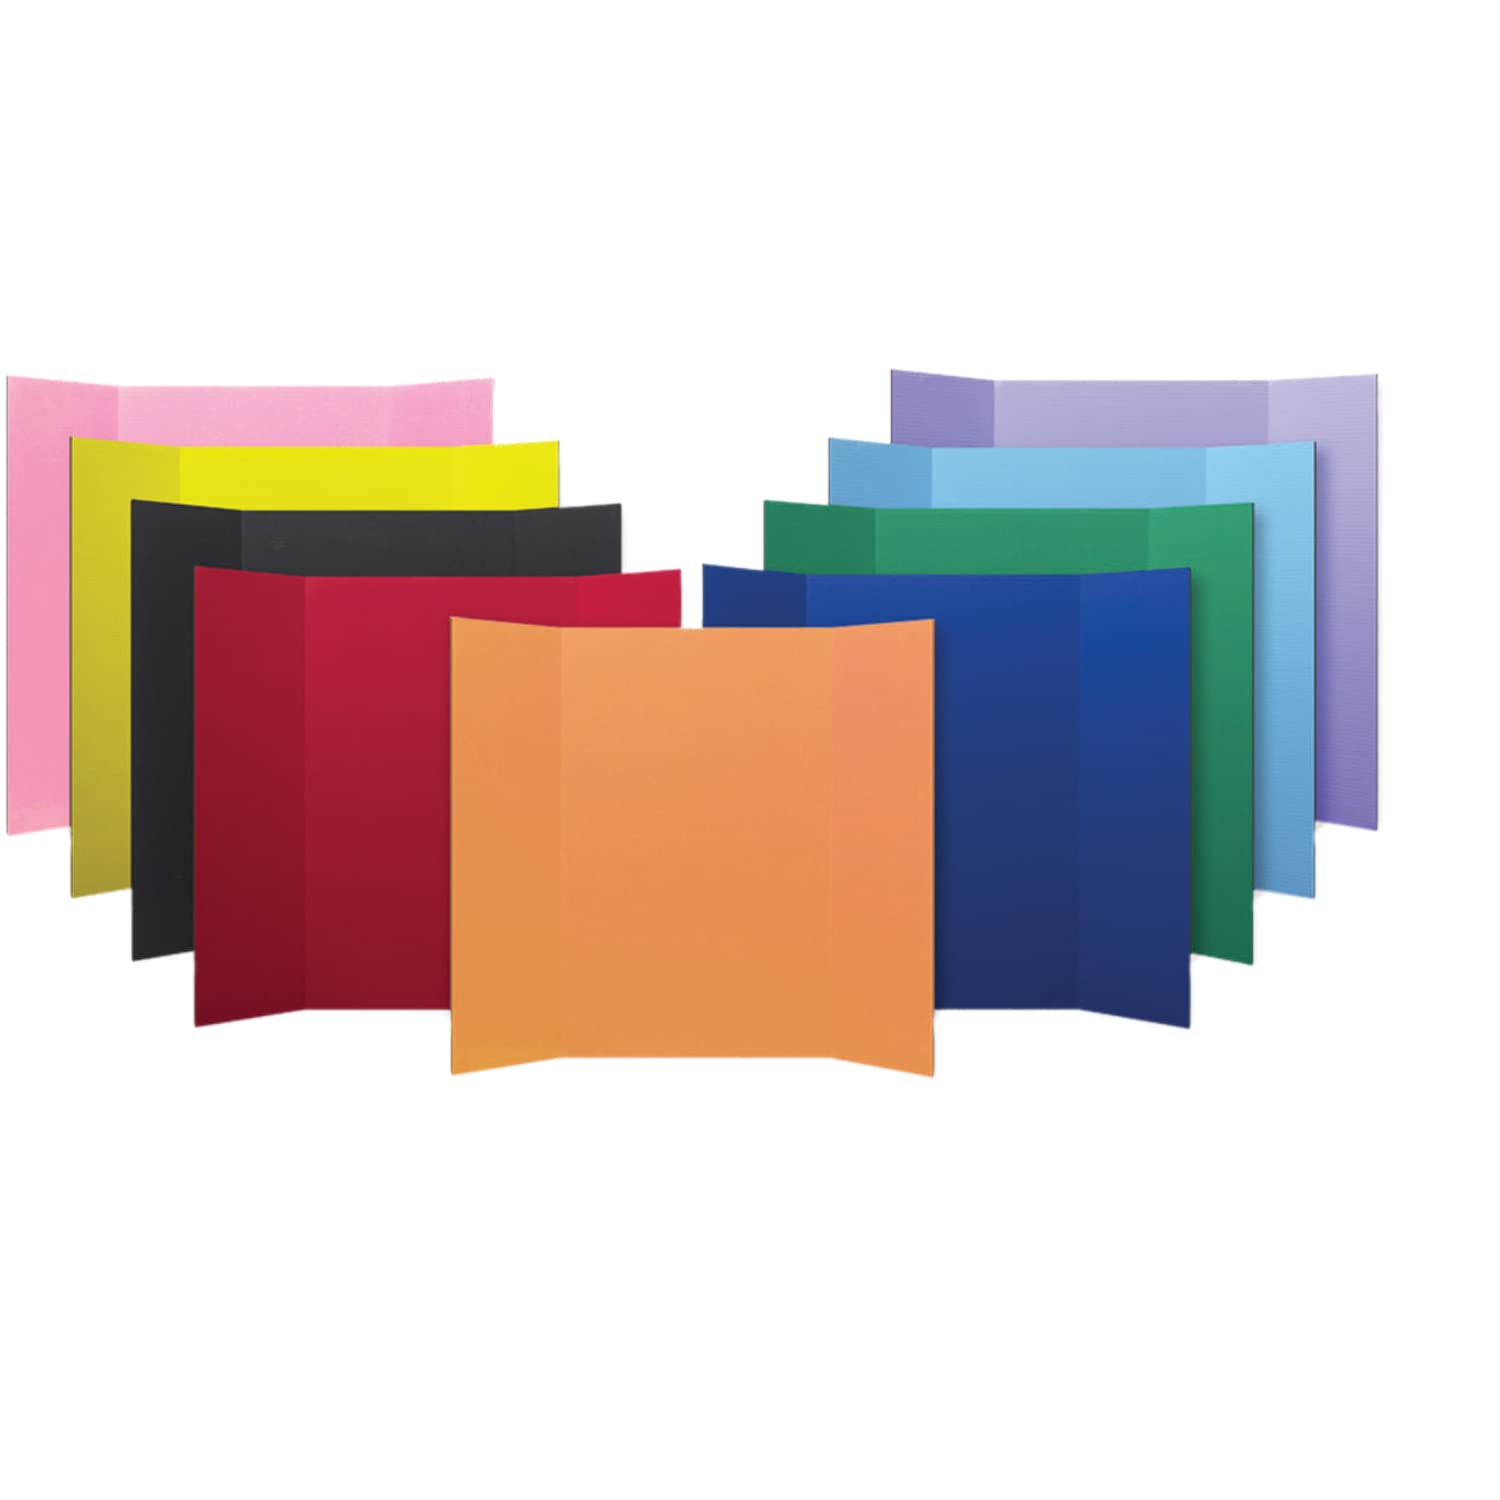 Flipside 36 x 48 1 Ply Color Ассортимент проектной доски оптом в упаковке 24 шт.